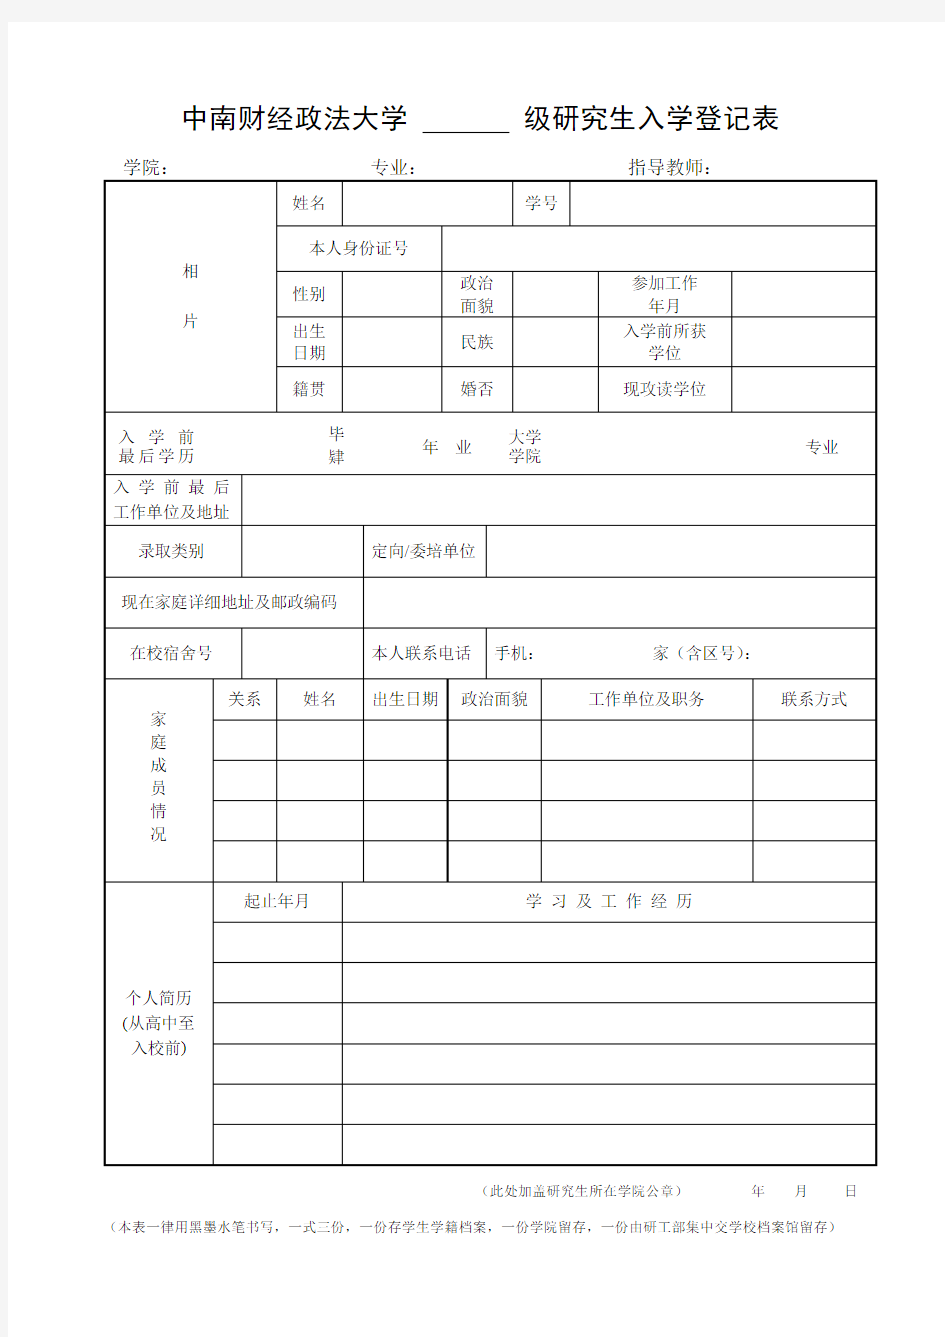 中南财经政法大学级研究生入学登记表【模板】